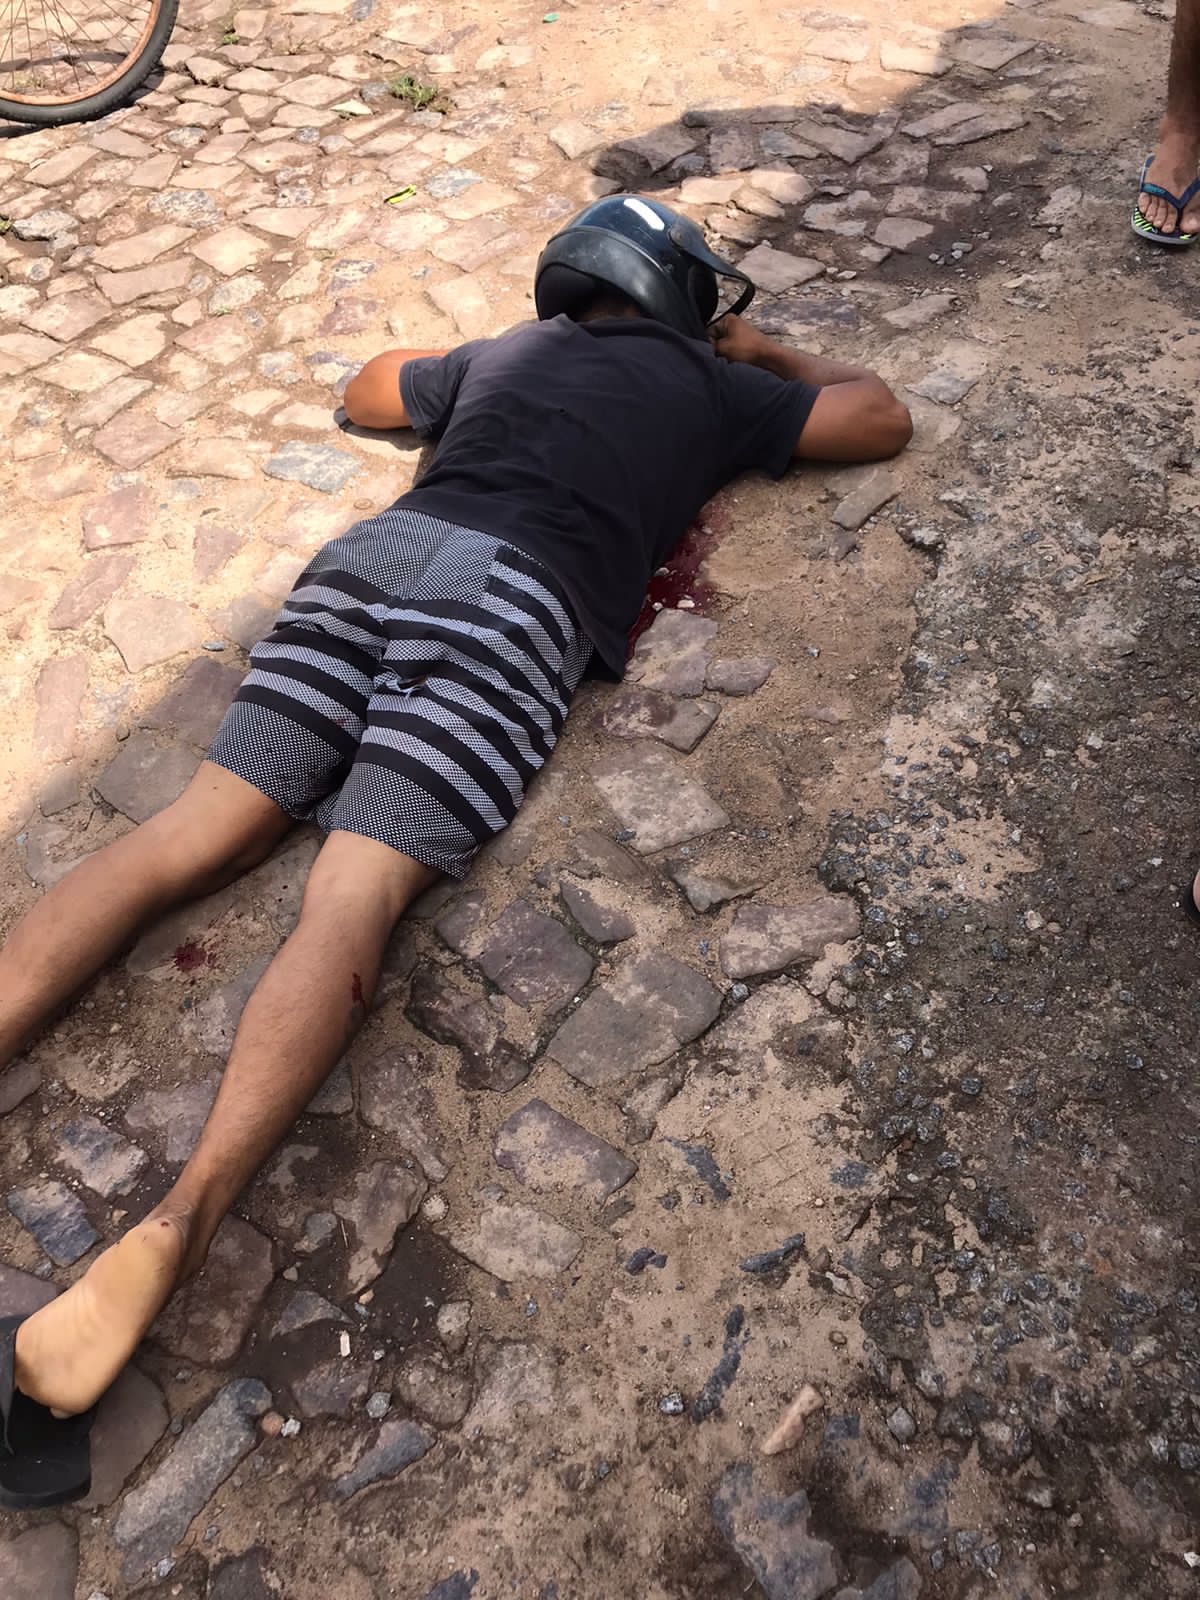 Suspeito de assalto é morto em povoado na cidade de Luís Correia - Foto: Reprodução/WhatsApp